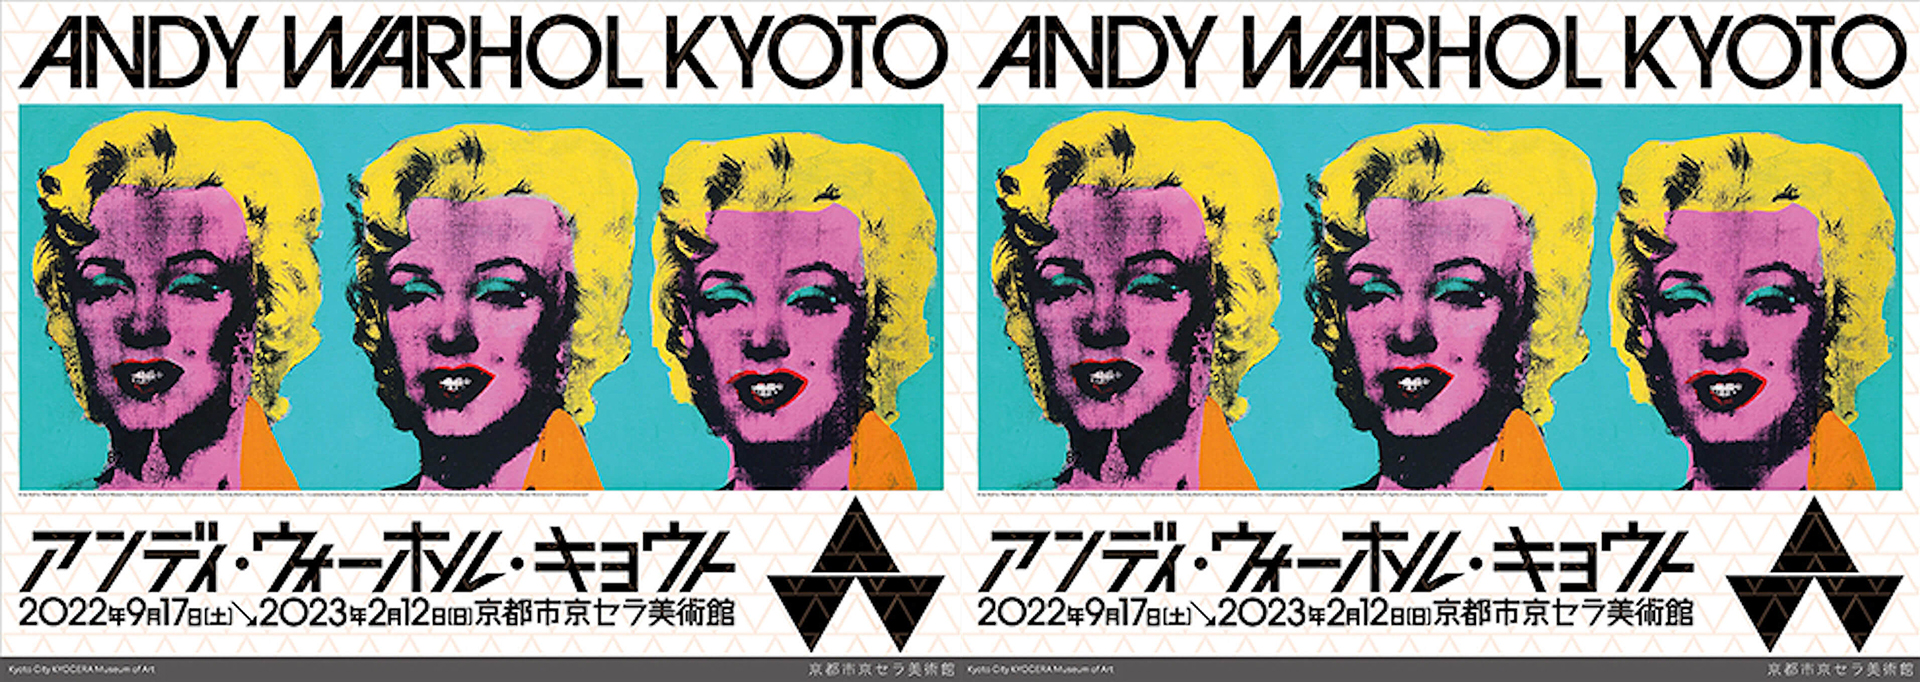 新世紀のアンディーウォーホル / New Century Andy Warhol」 - DOMMUNE